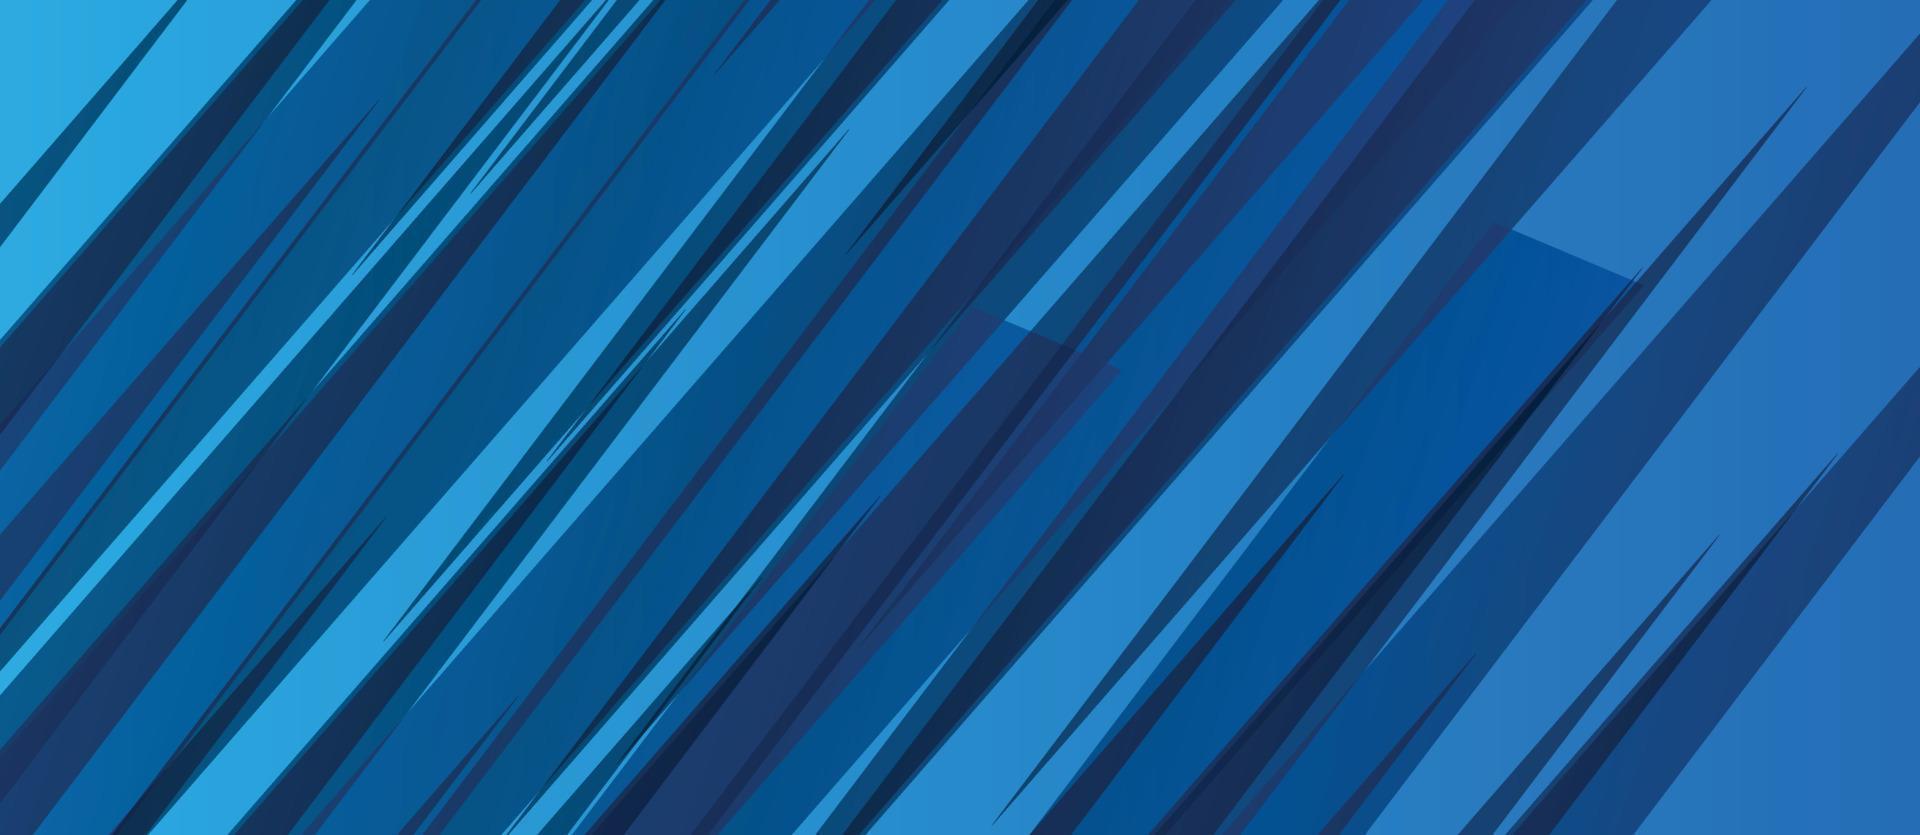 fond de rayons de ligne bleue abstraite vecteur